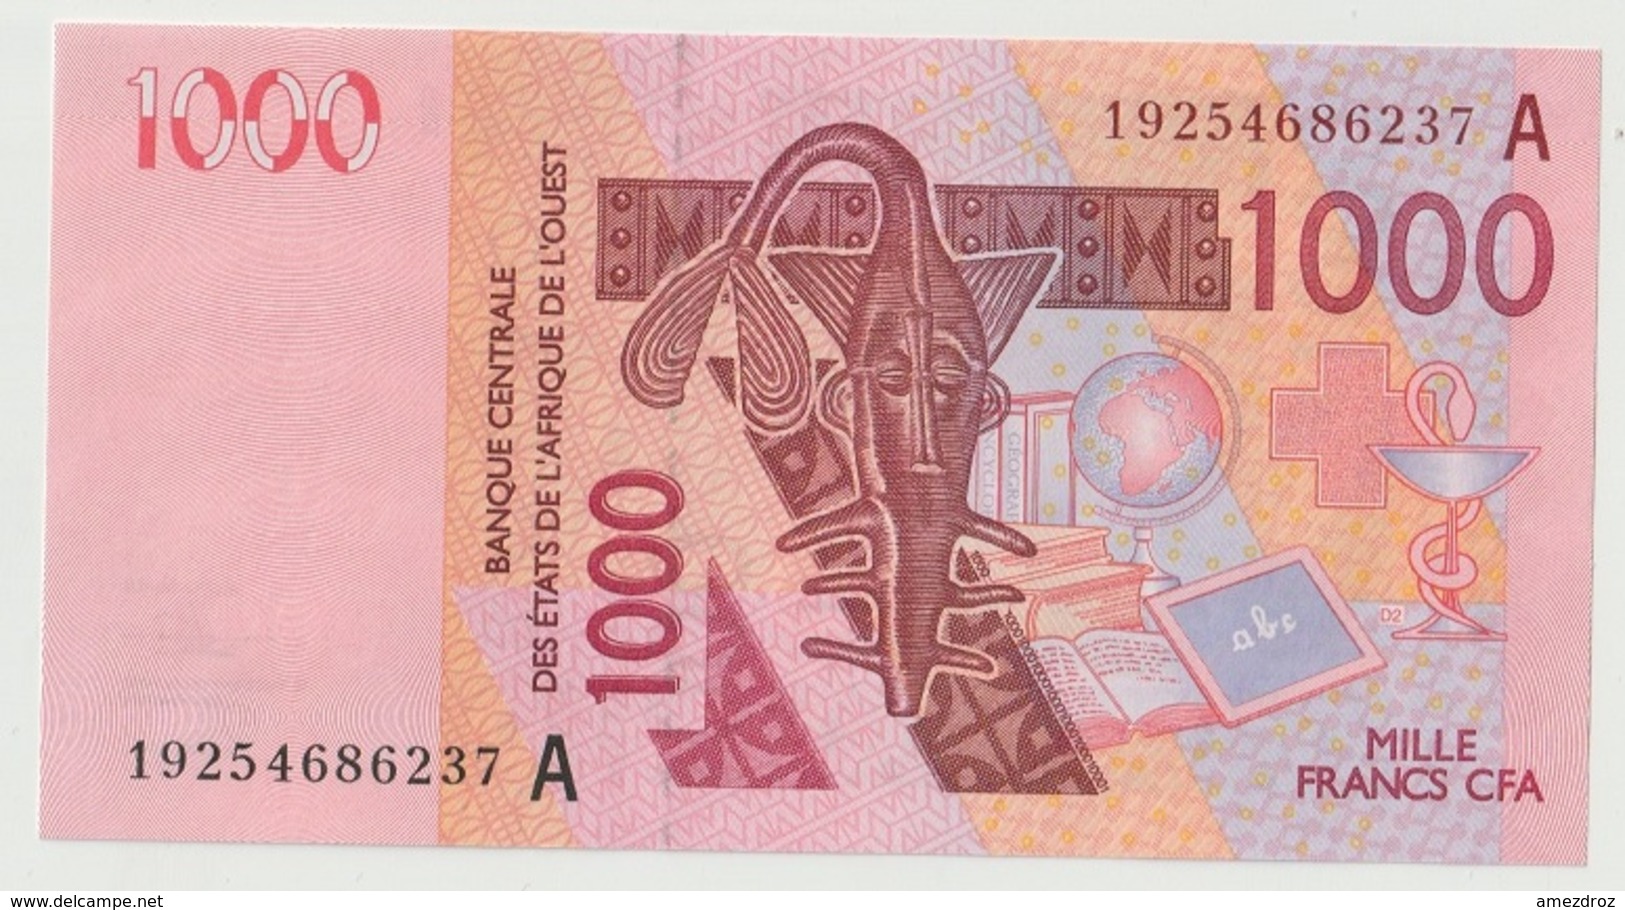 Billet De 1000 Francs CFA XOF Non Circulé Afrique De L'Ouest Origine Cote D'Ivoire - Costa D'Avorio